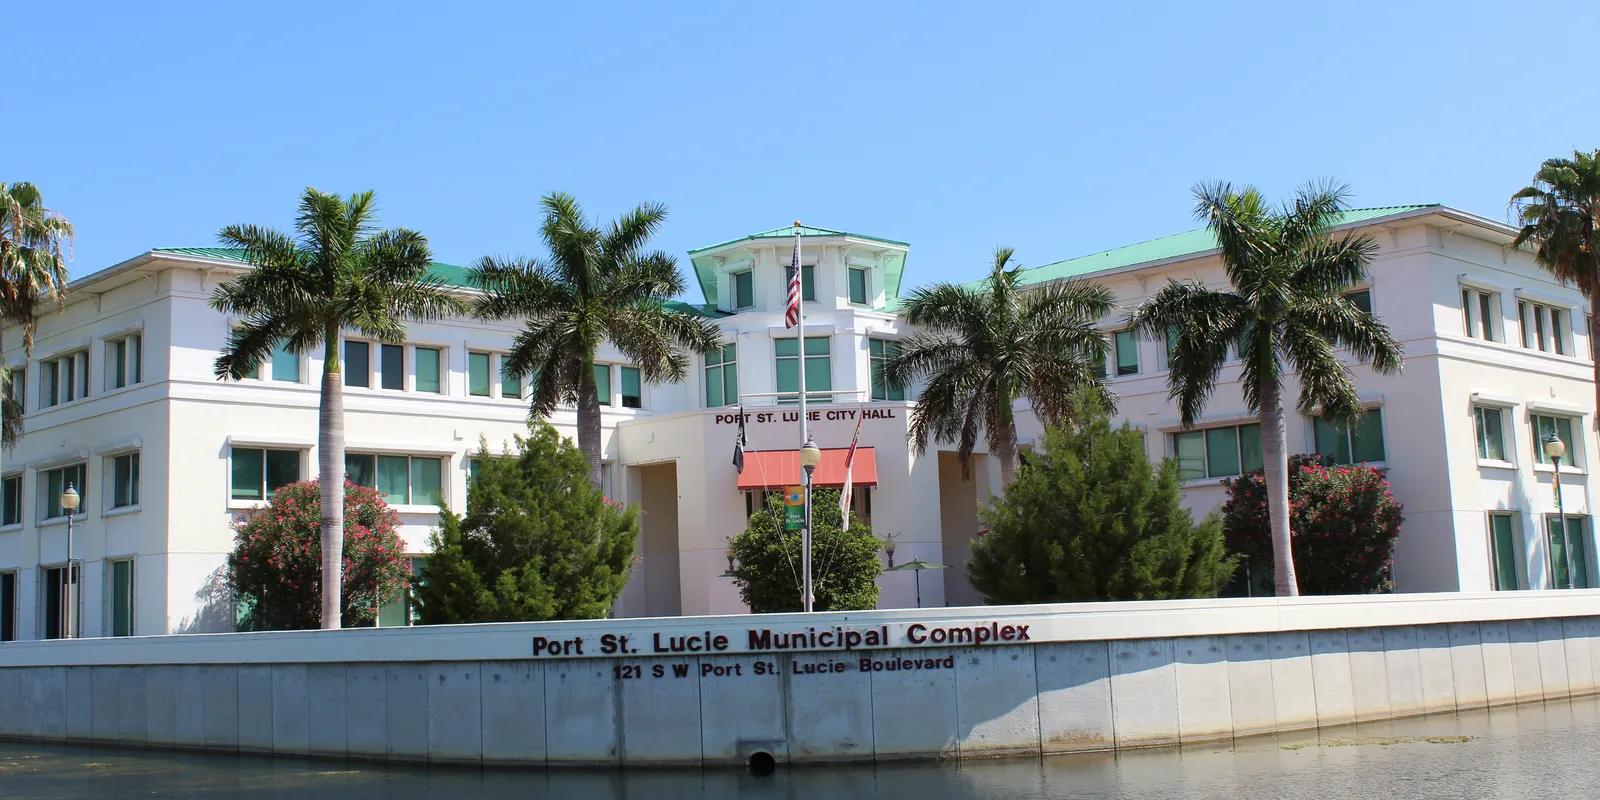 Port St. Lucle Municipal Complex Building